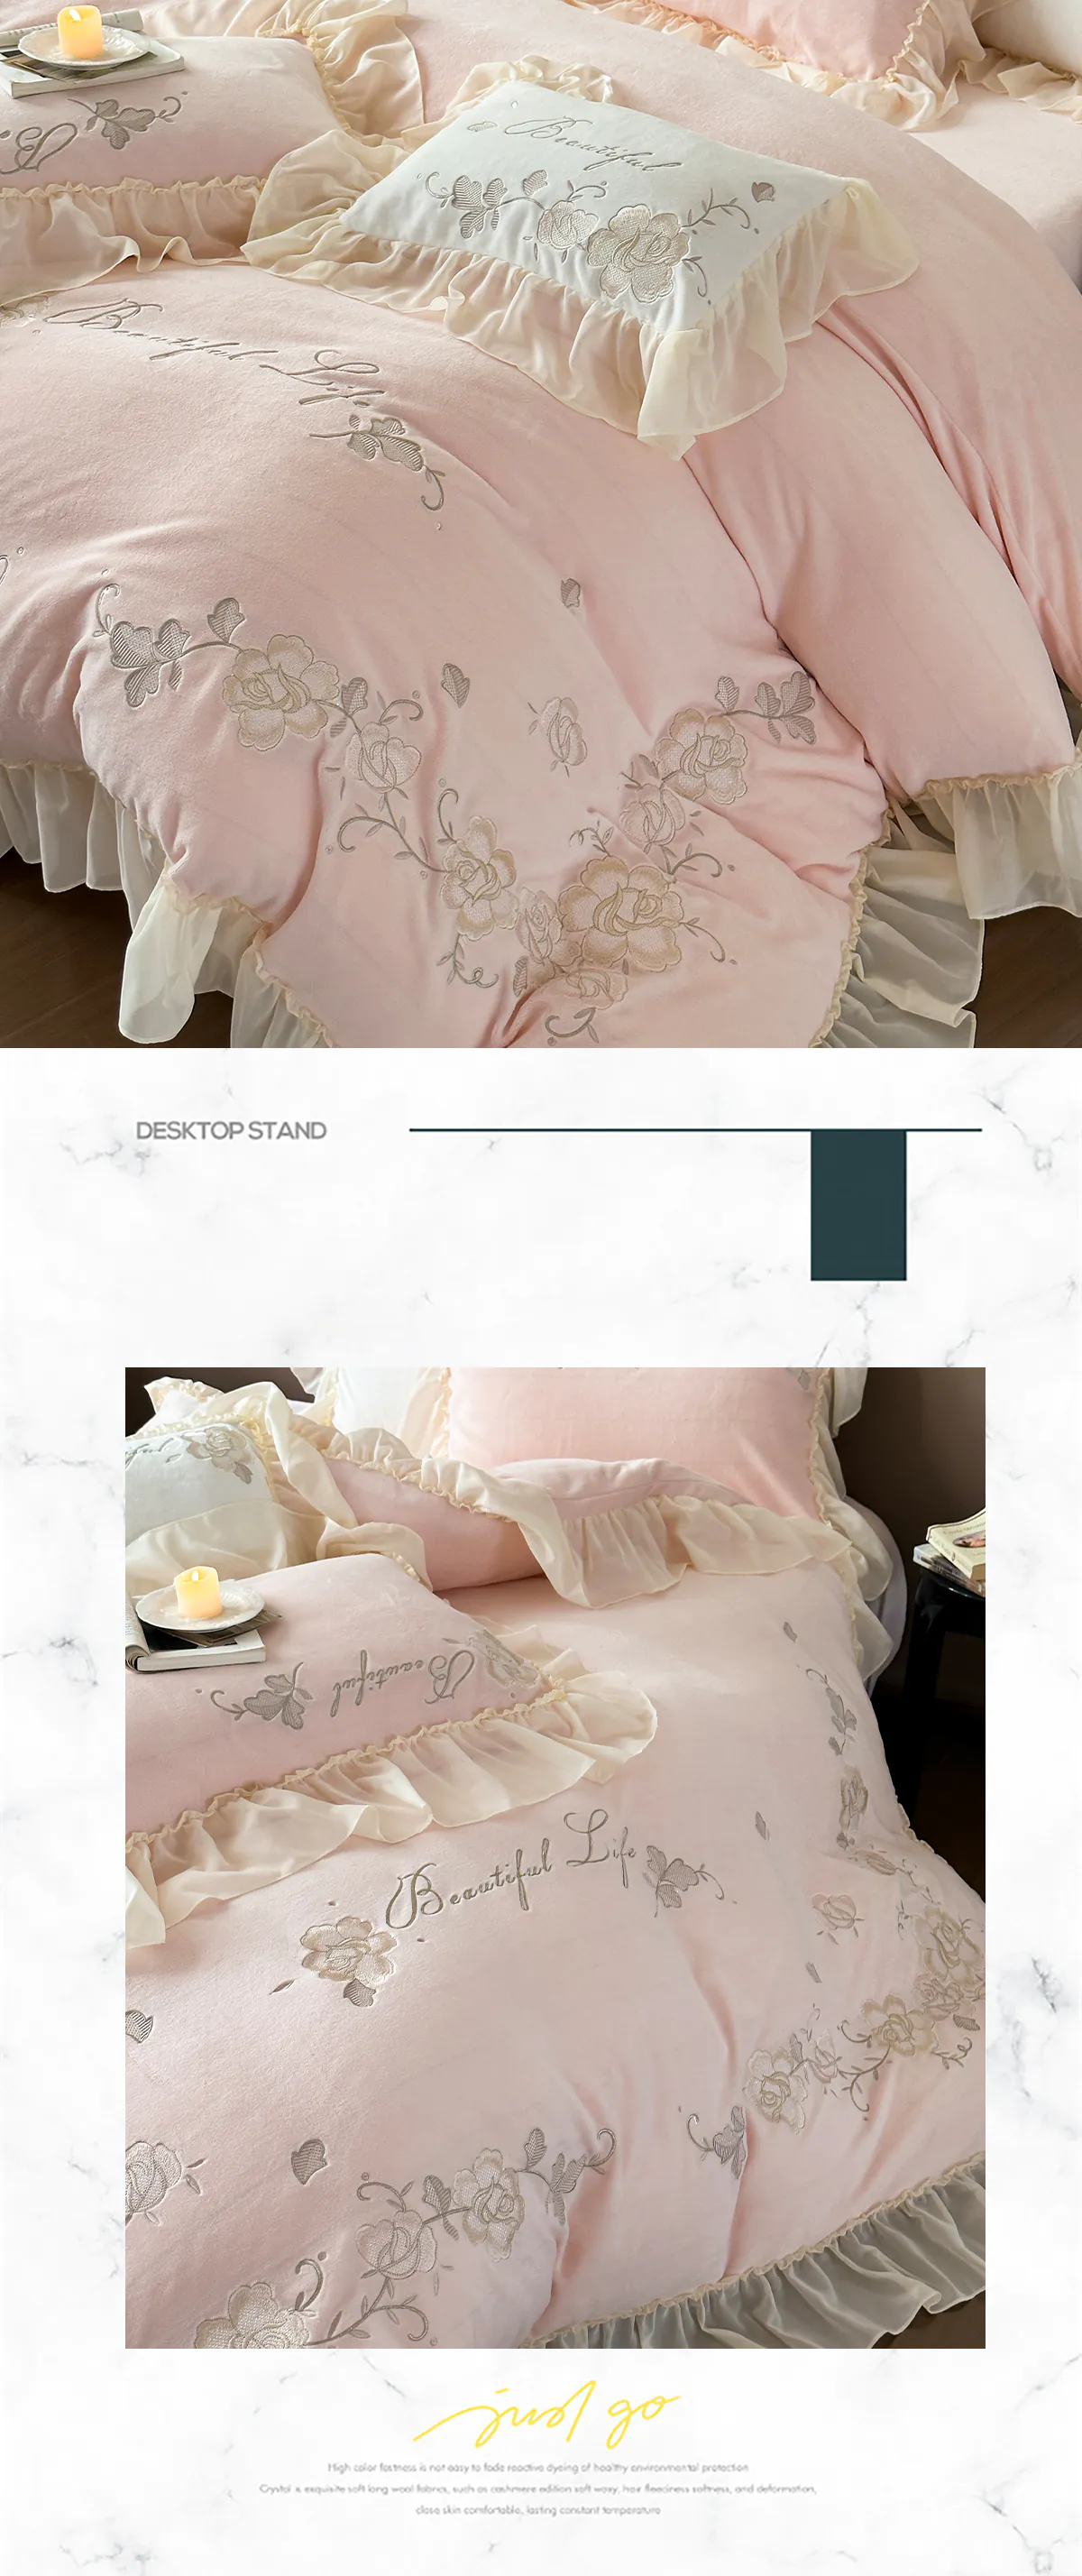 Aesthetic-Soft-Milk-Fiber-Duvet-Cover-Bed-Sheet-Pillowcases-4-Pcs-Set13